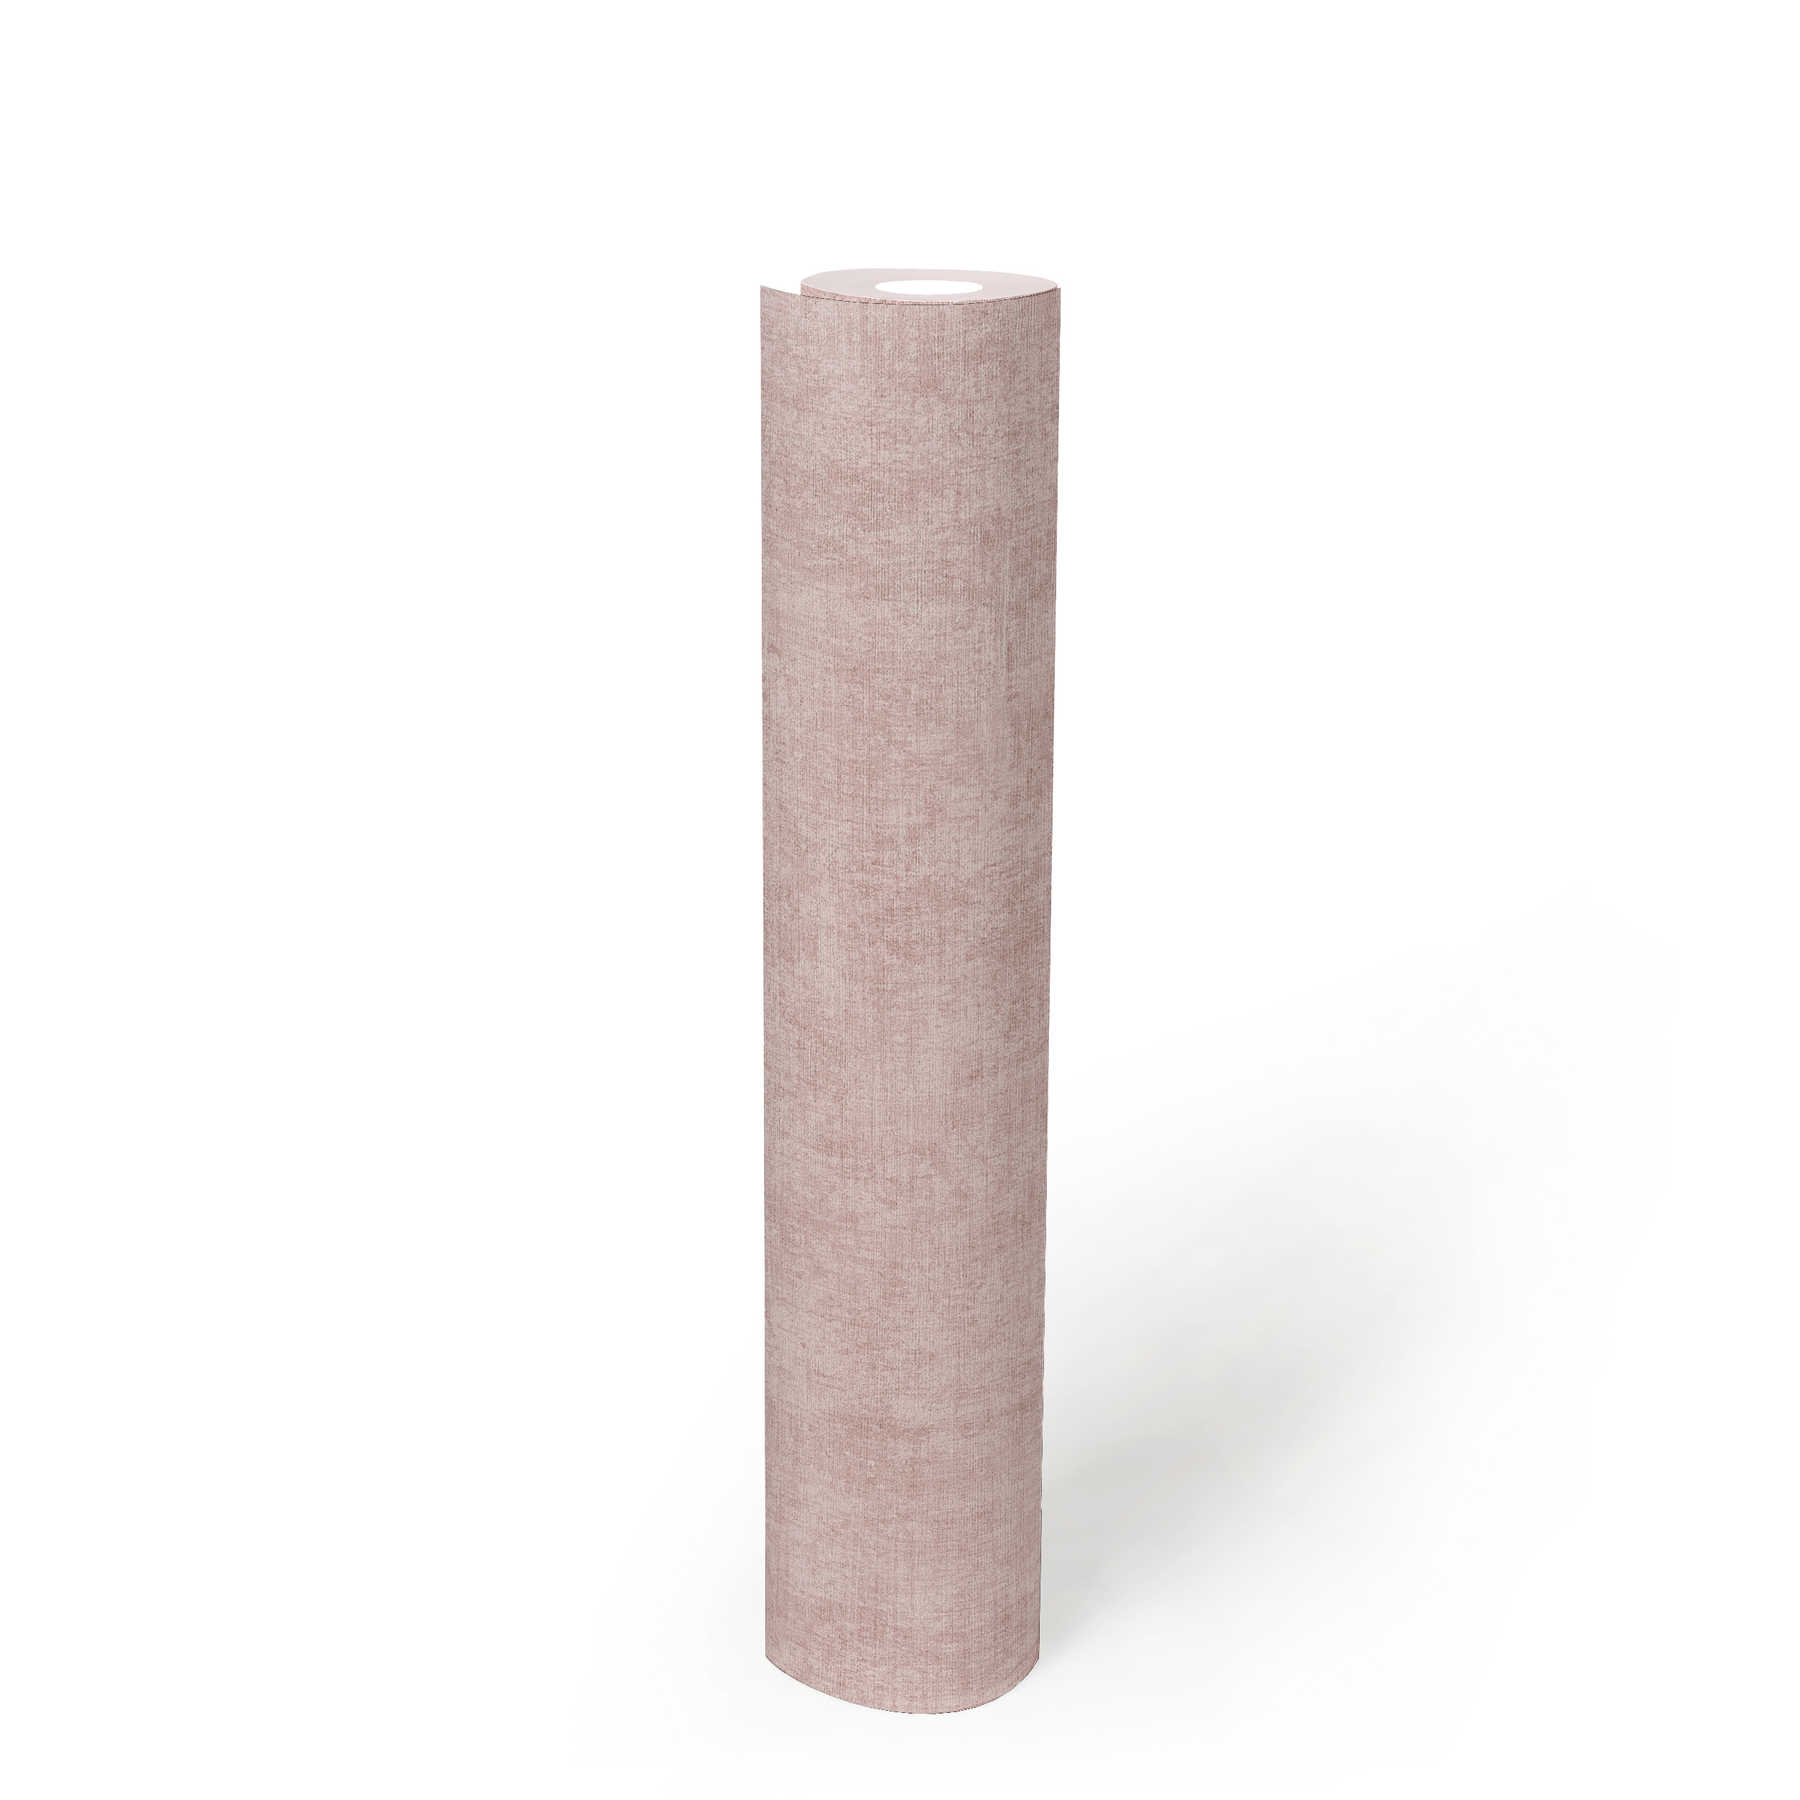             Non-woven wallpaper plain, mottled, textured pattern - pink
        